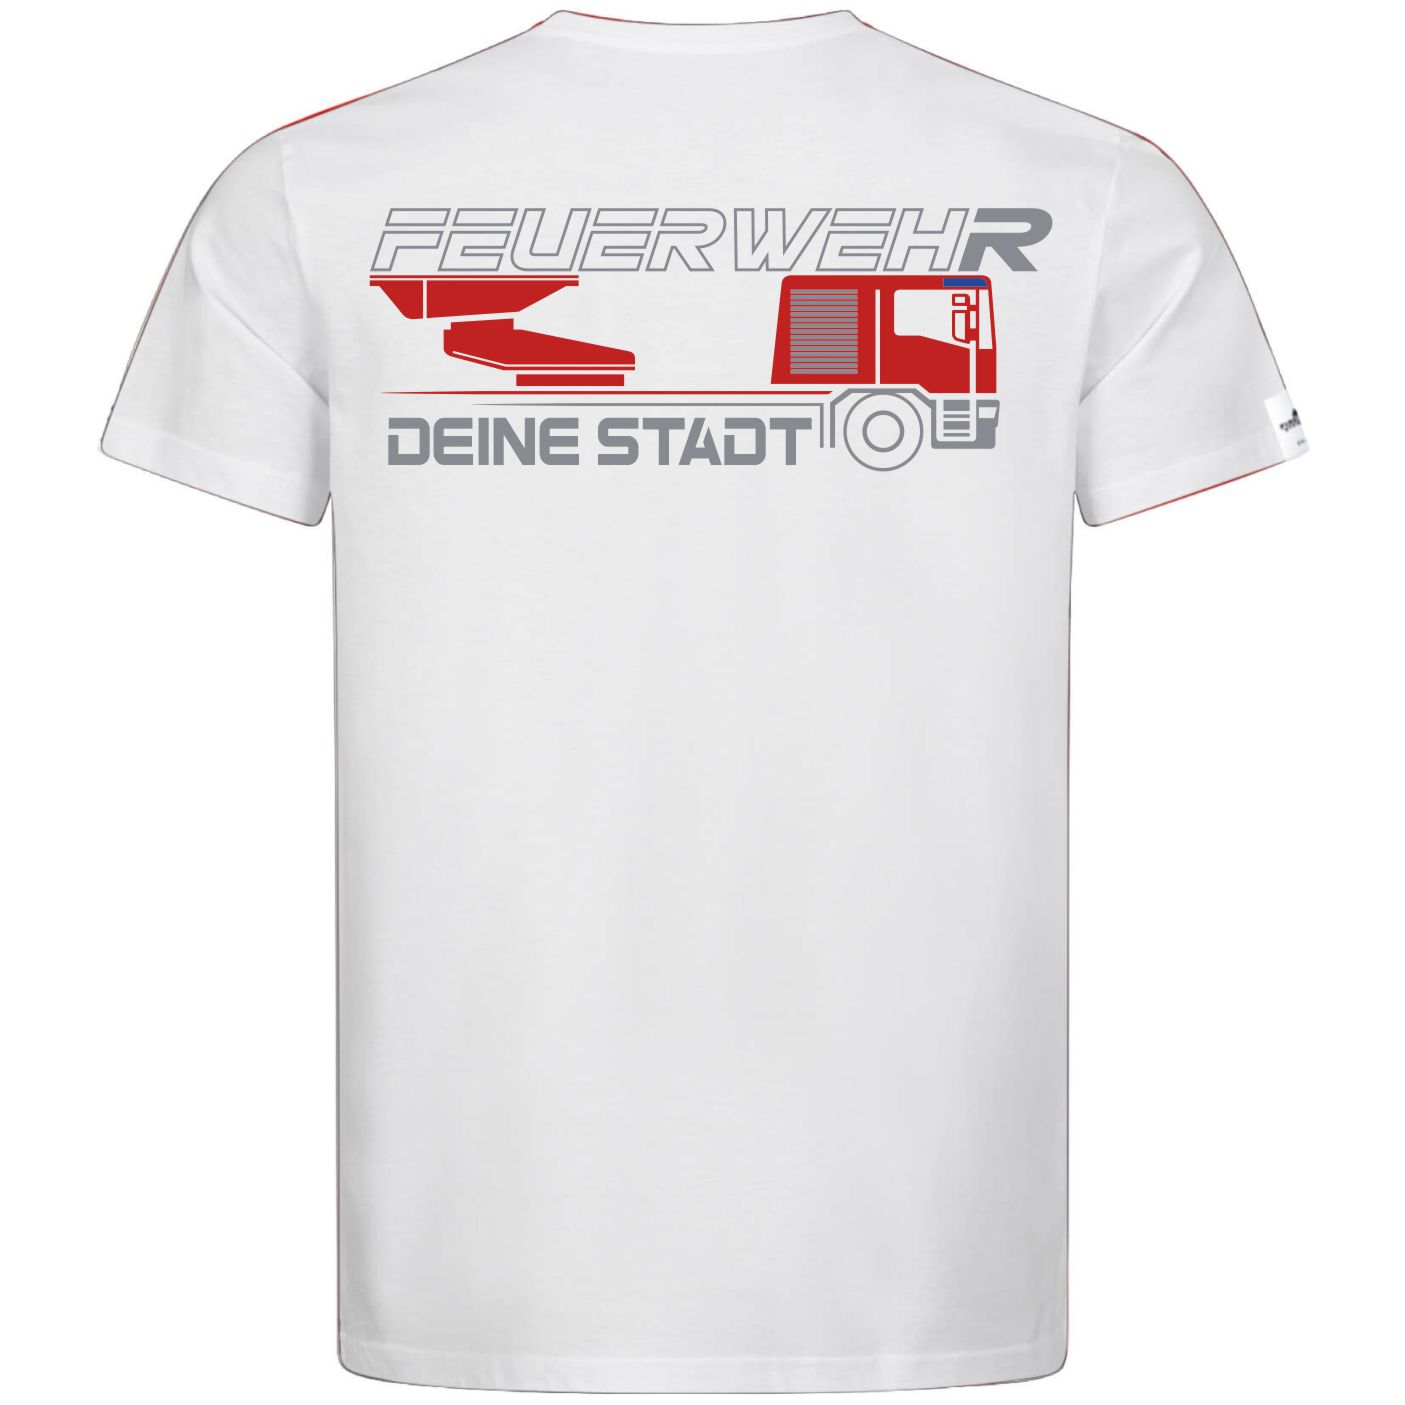 Teamwear Männer T-Shirt - Drehleiter + Deine Stadt